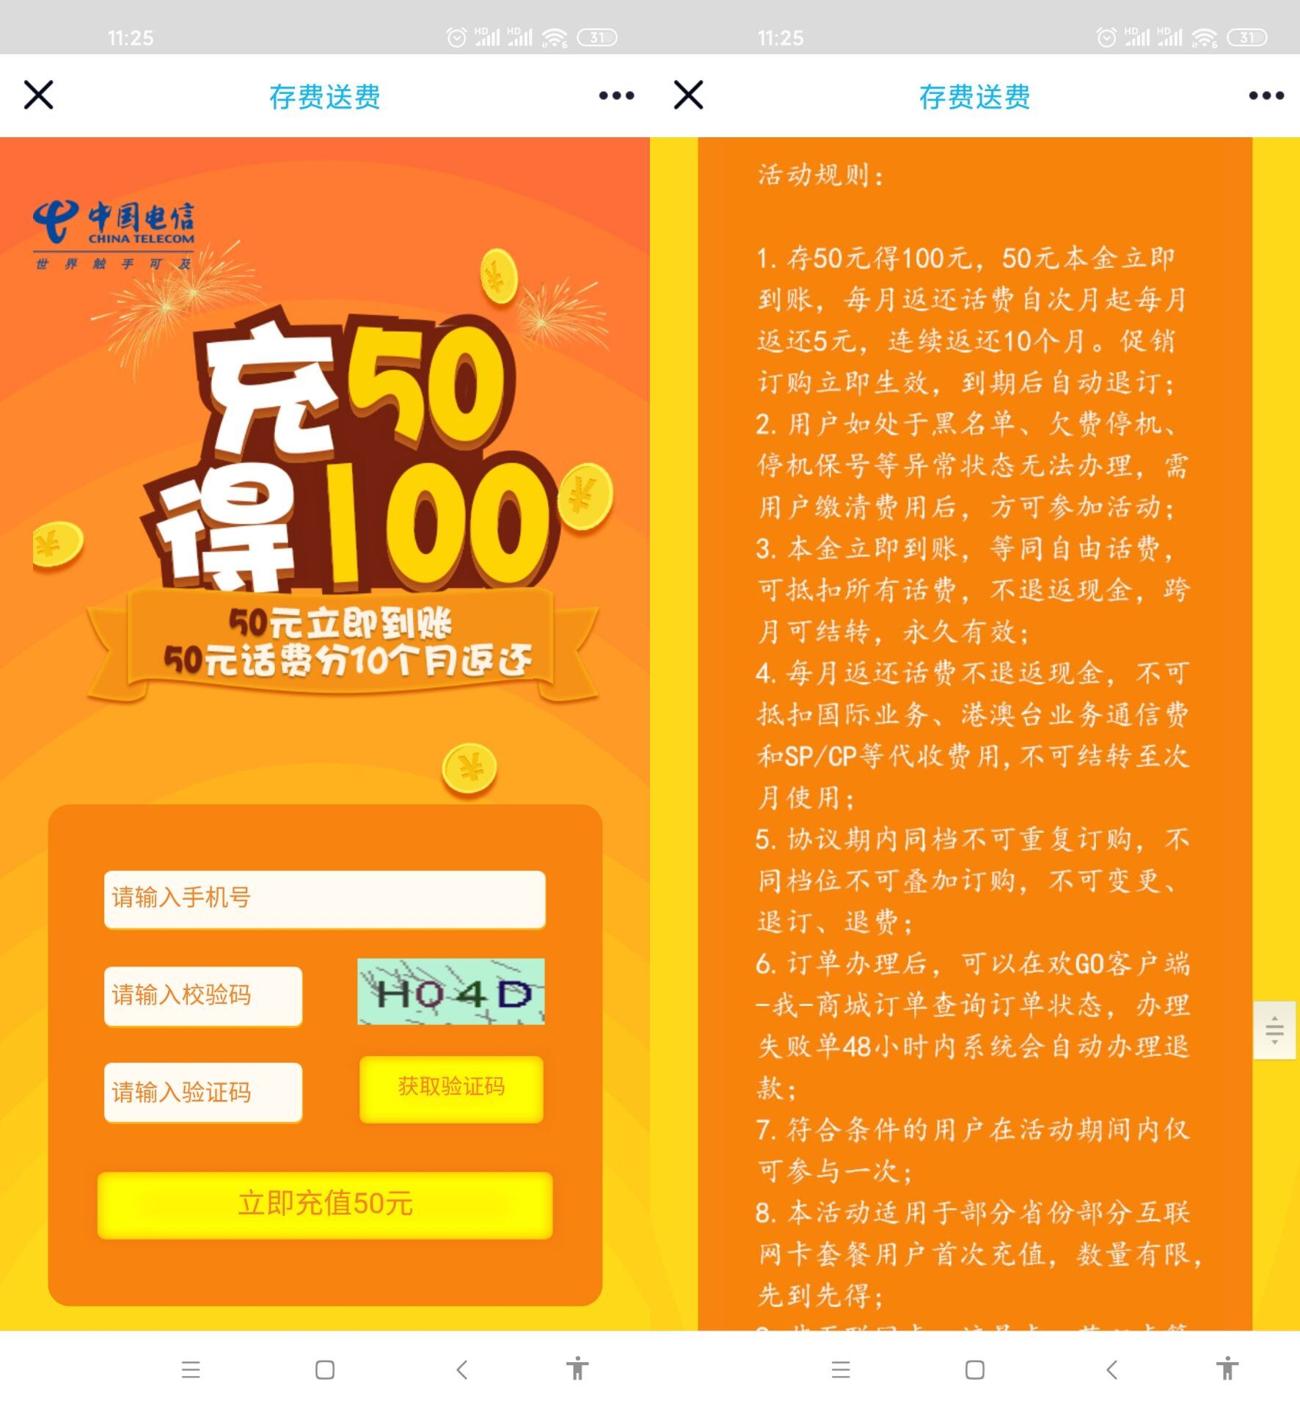 中国电信充50元得100元话费活动